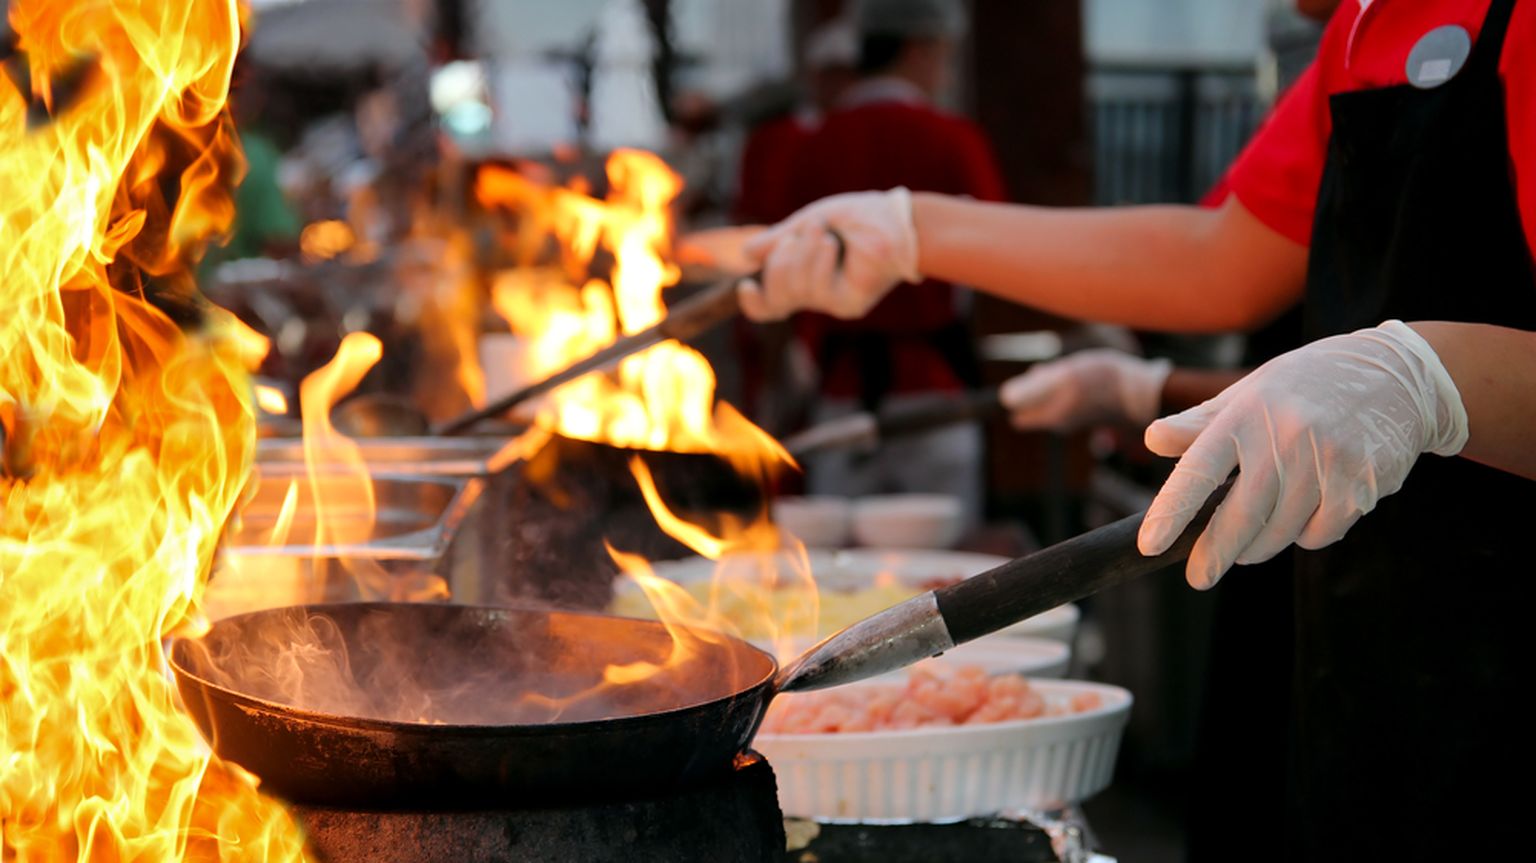 KULBID KOKKU! Eestis moodustati esmakordselt kokkade võistkond, kes osaleb kulinaarsetel olümpiamängudel